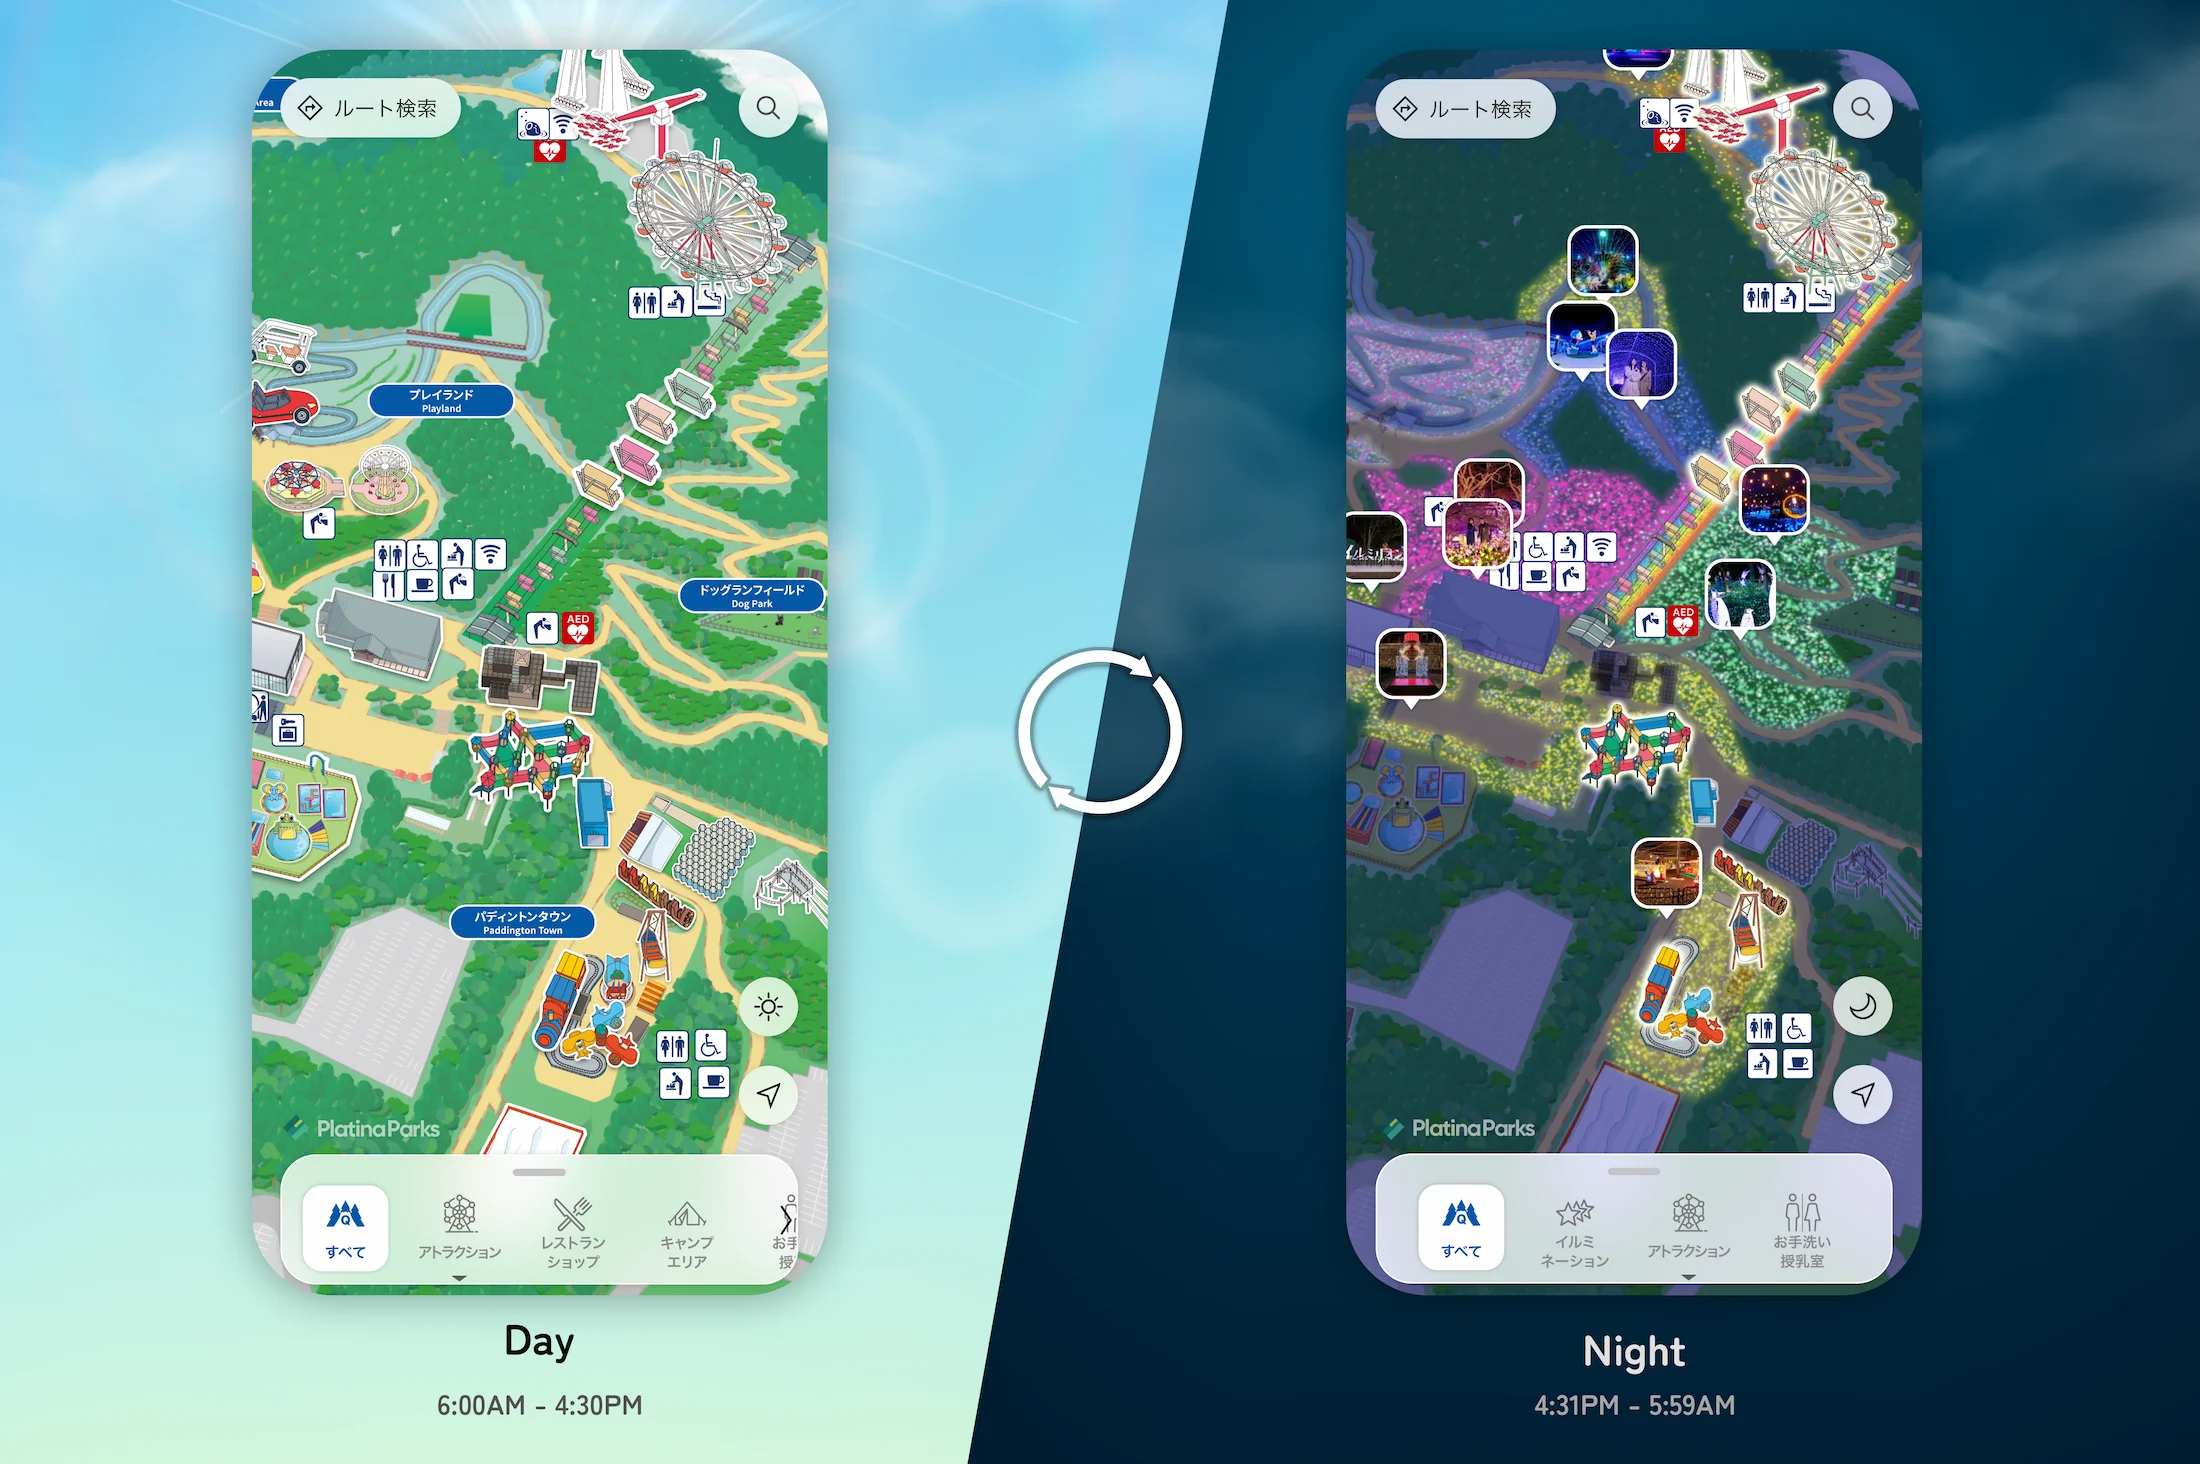 「さがみ湖リゾートプレジャーフォレスト デジタルマップ」スマートフォン画面